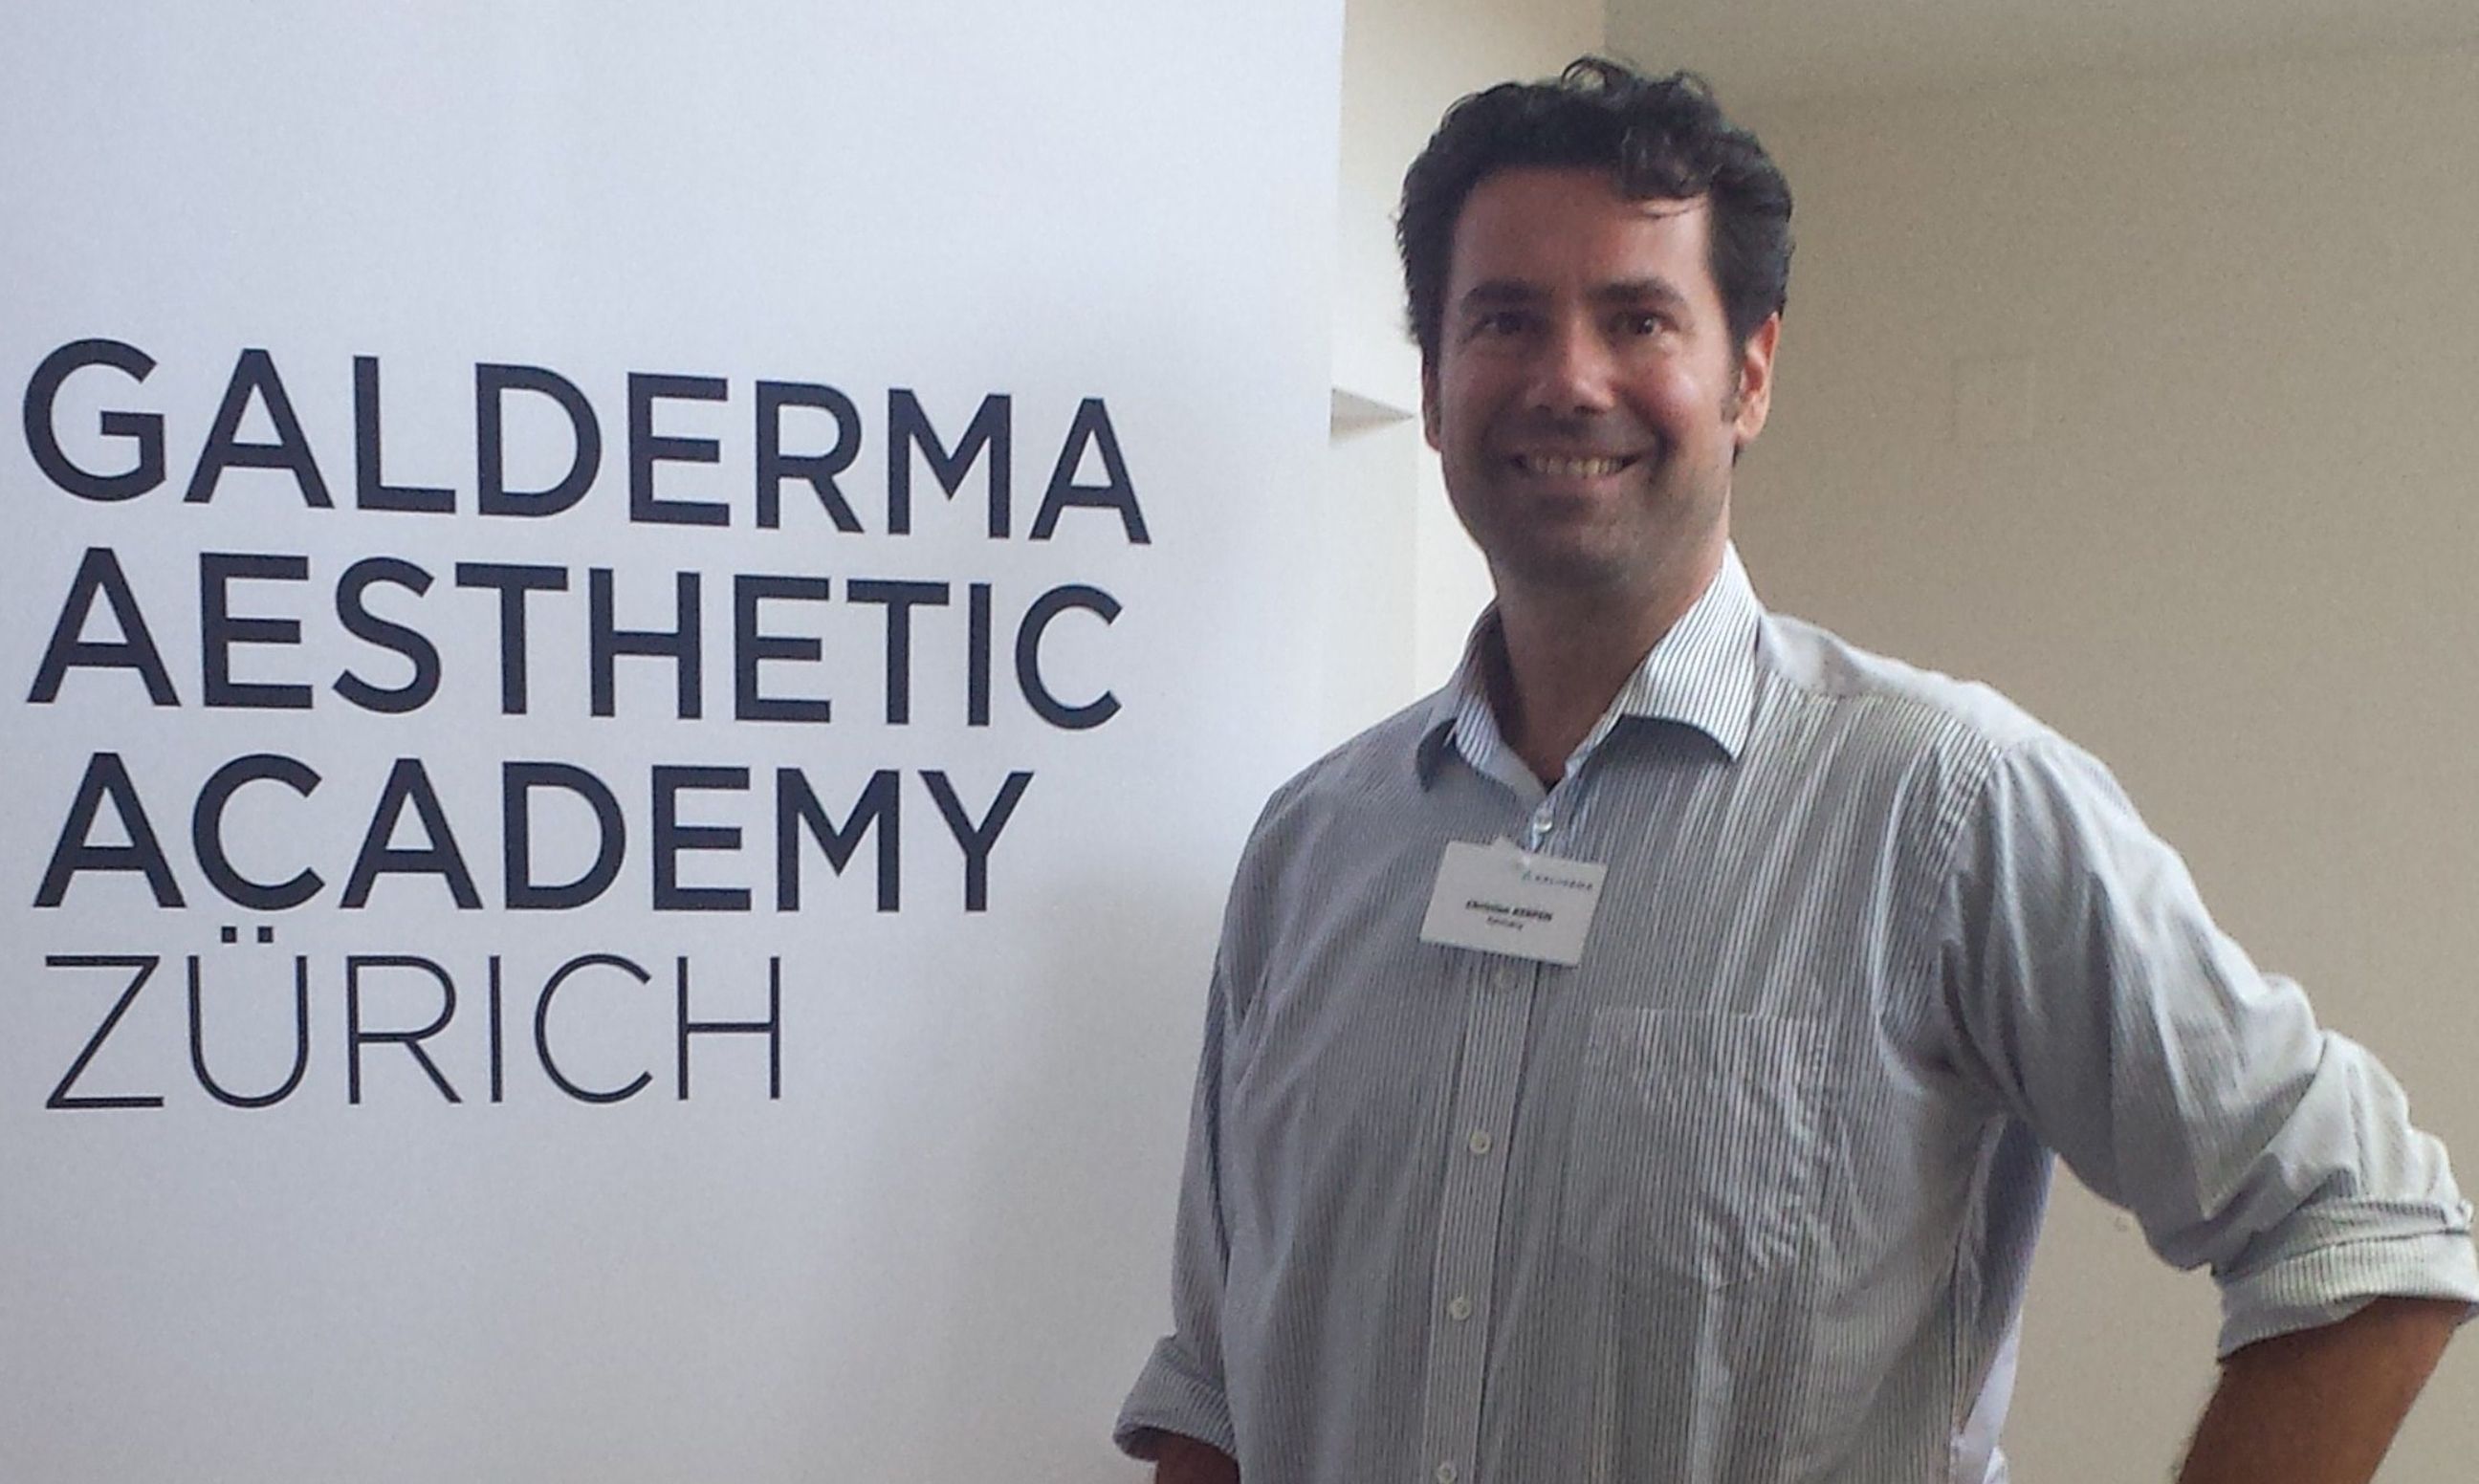 Dr. Kerpen bedankt sich für die freundliche Einladung von Galderma zur Aesthetic Academy in Zürich